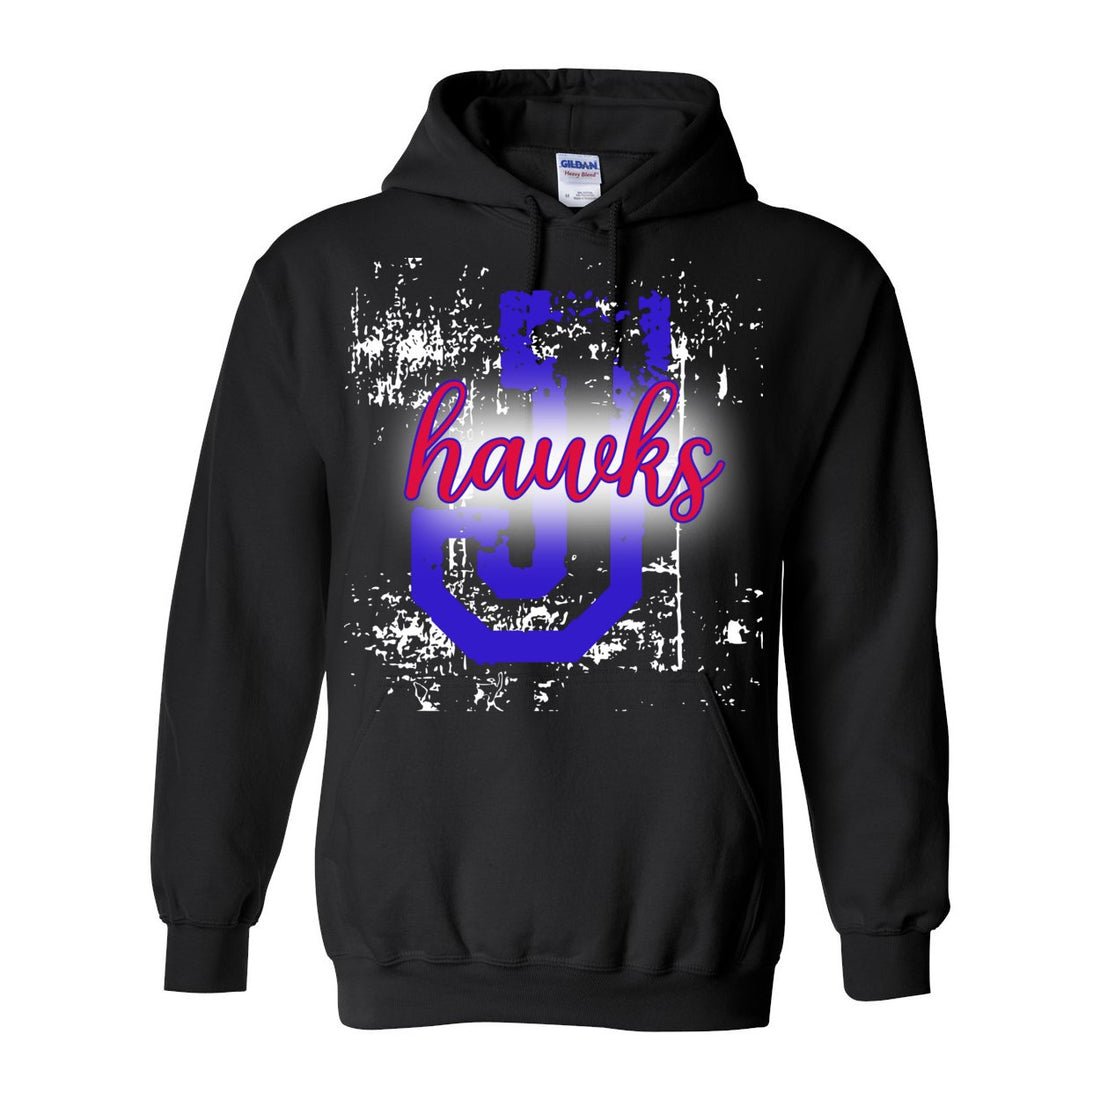 J-Hawks Sport Hooded Sweatshirt - Sweaters/Hoodies - Positively Sassy - J-Hawks Sport Hooded Sweatshirt